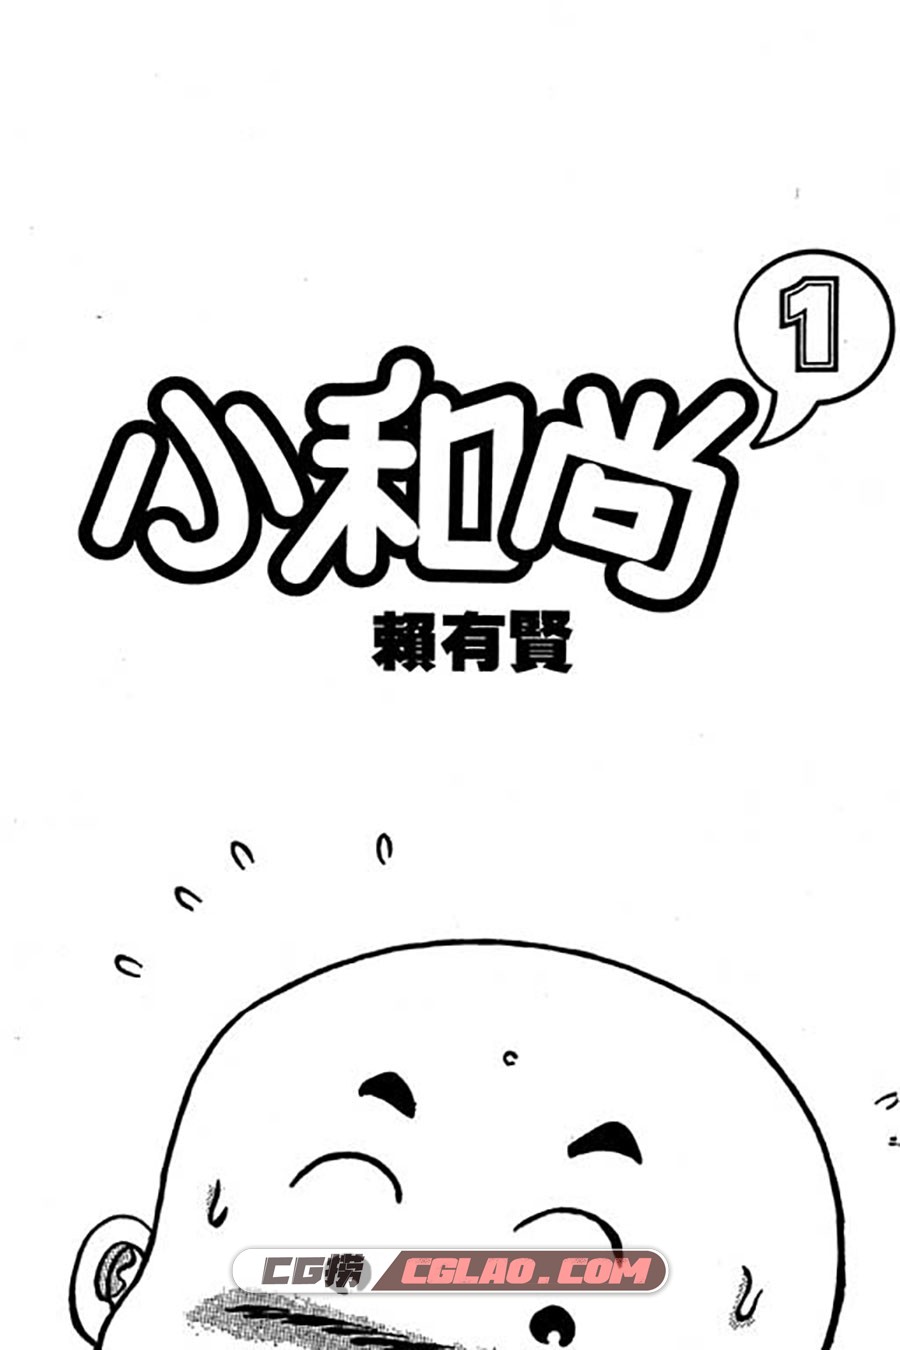 小和尚 赖有贤 1-28册 漫画全集下载 百度网盘,001_001.jpg